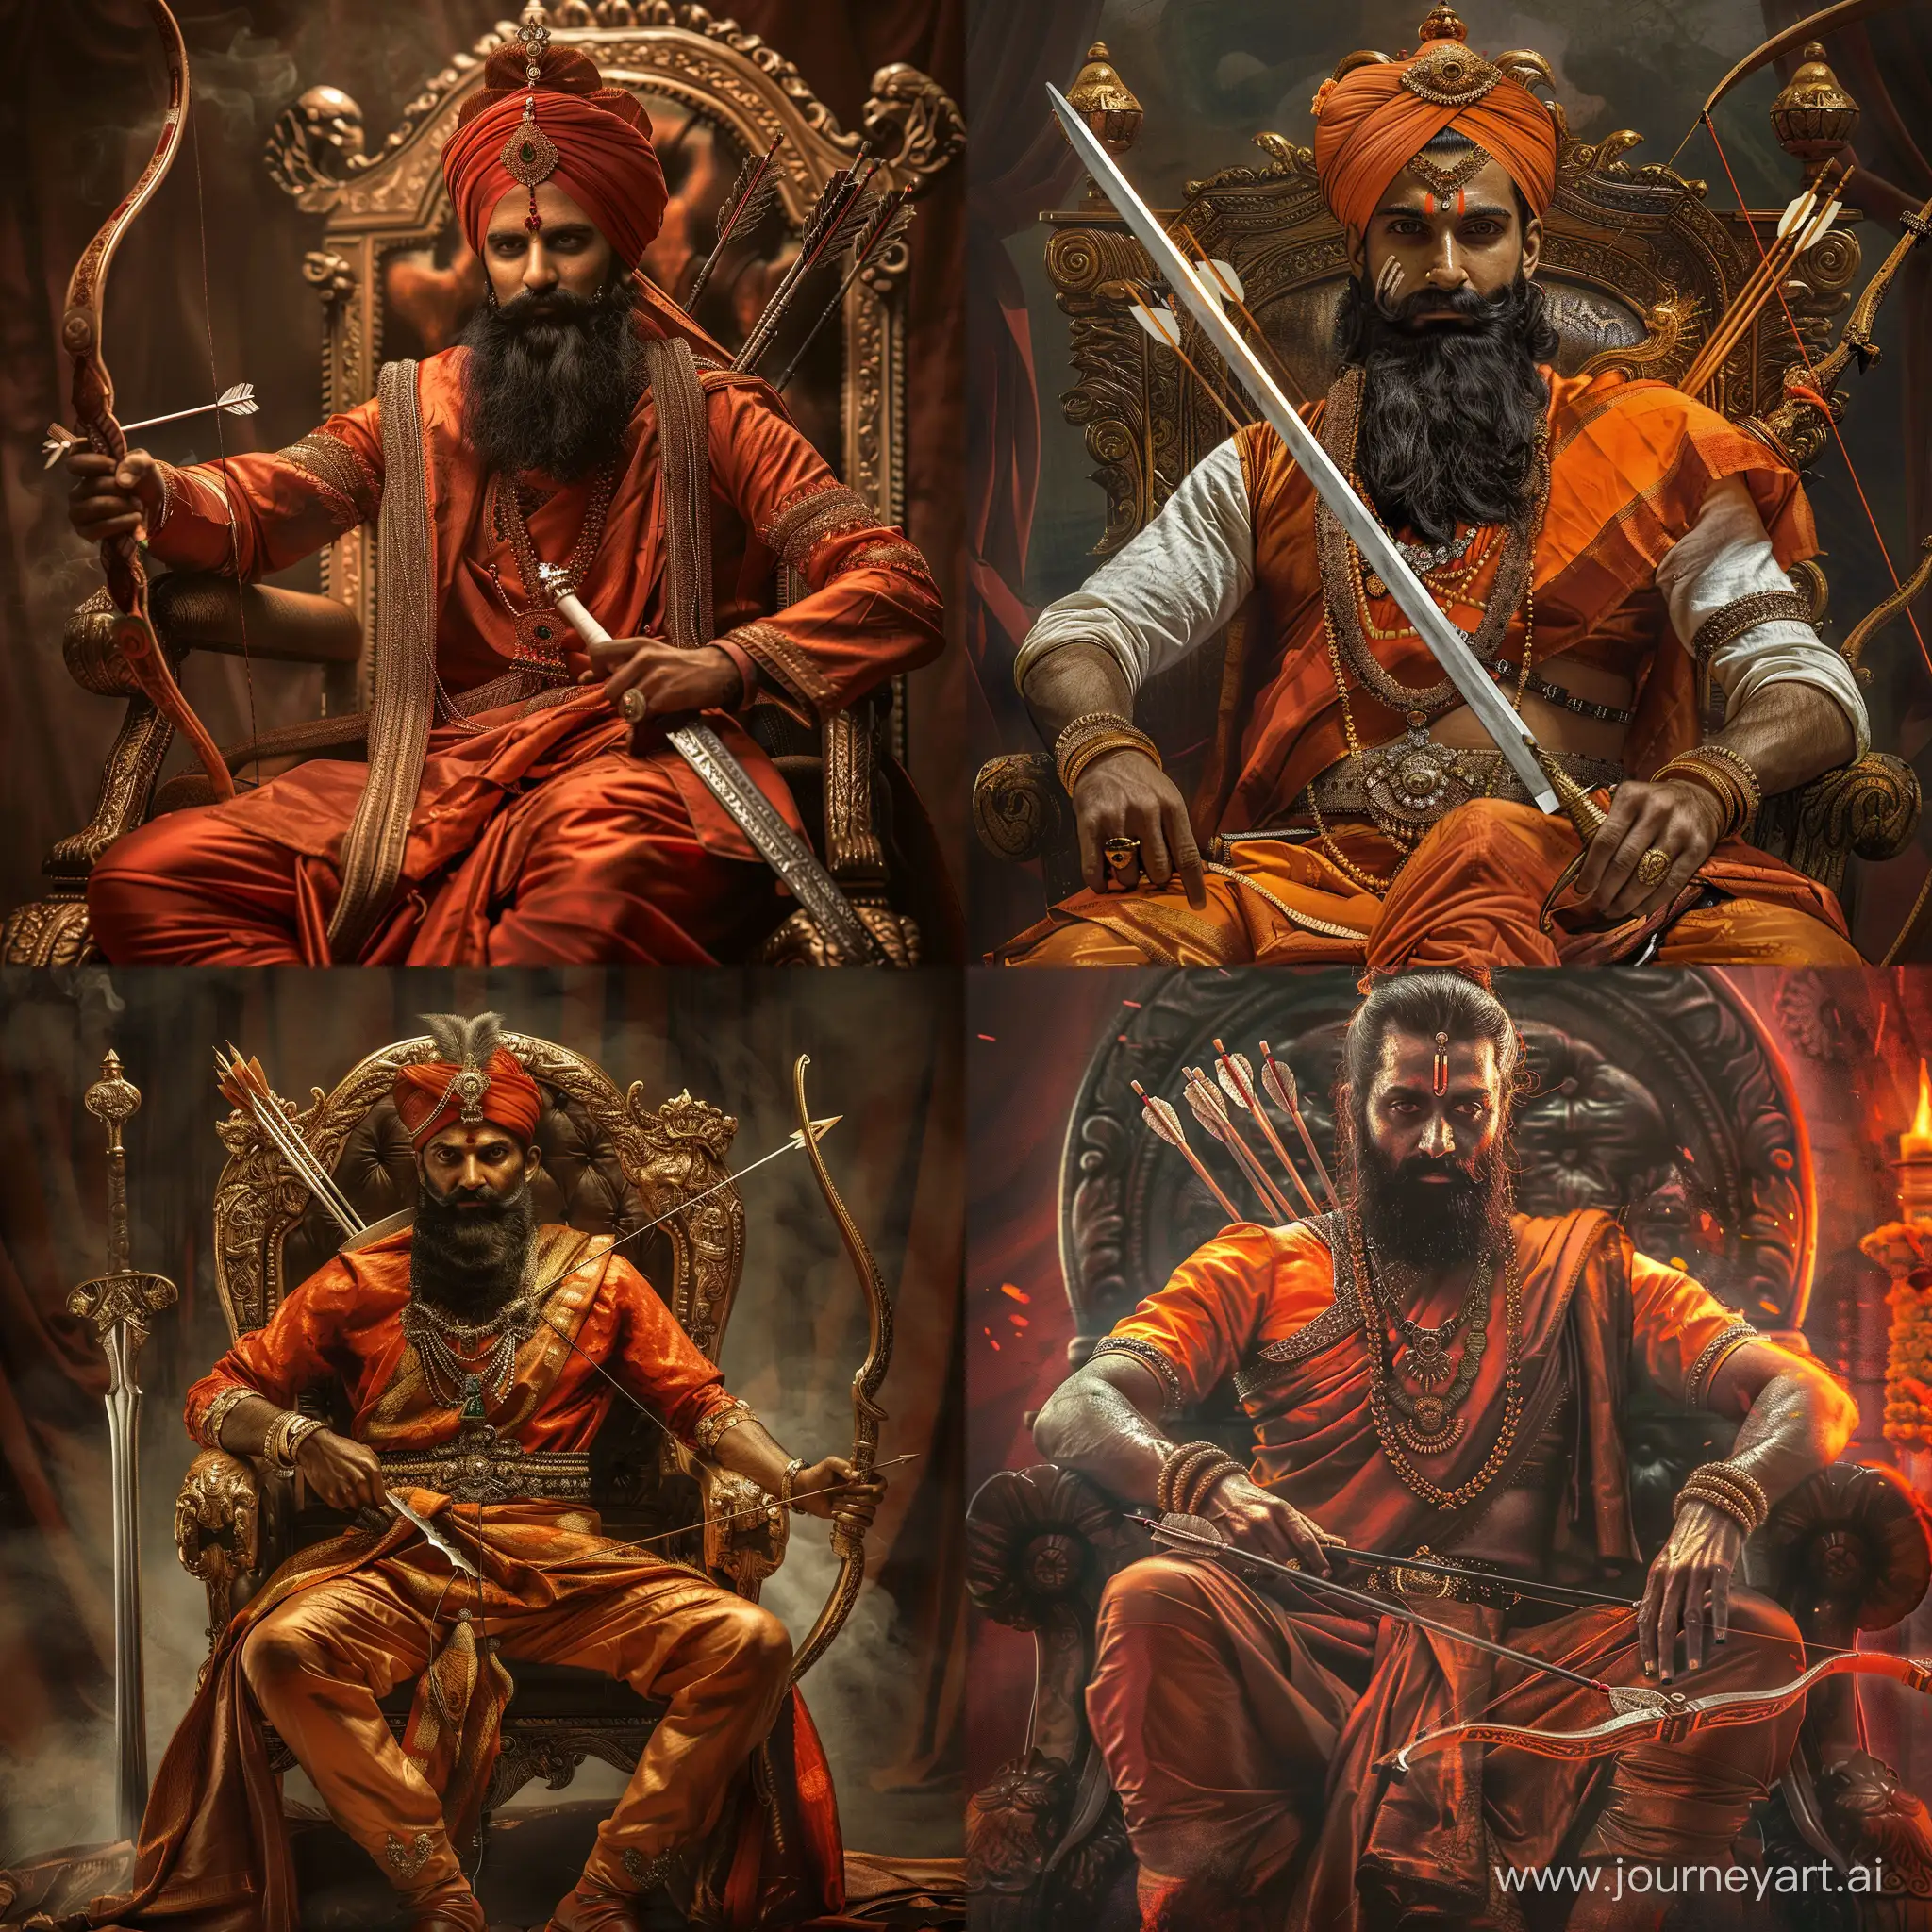 chatrapati shivaji maharaj with beard, sword, bow and arrow, throne
